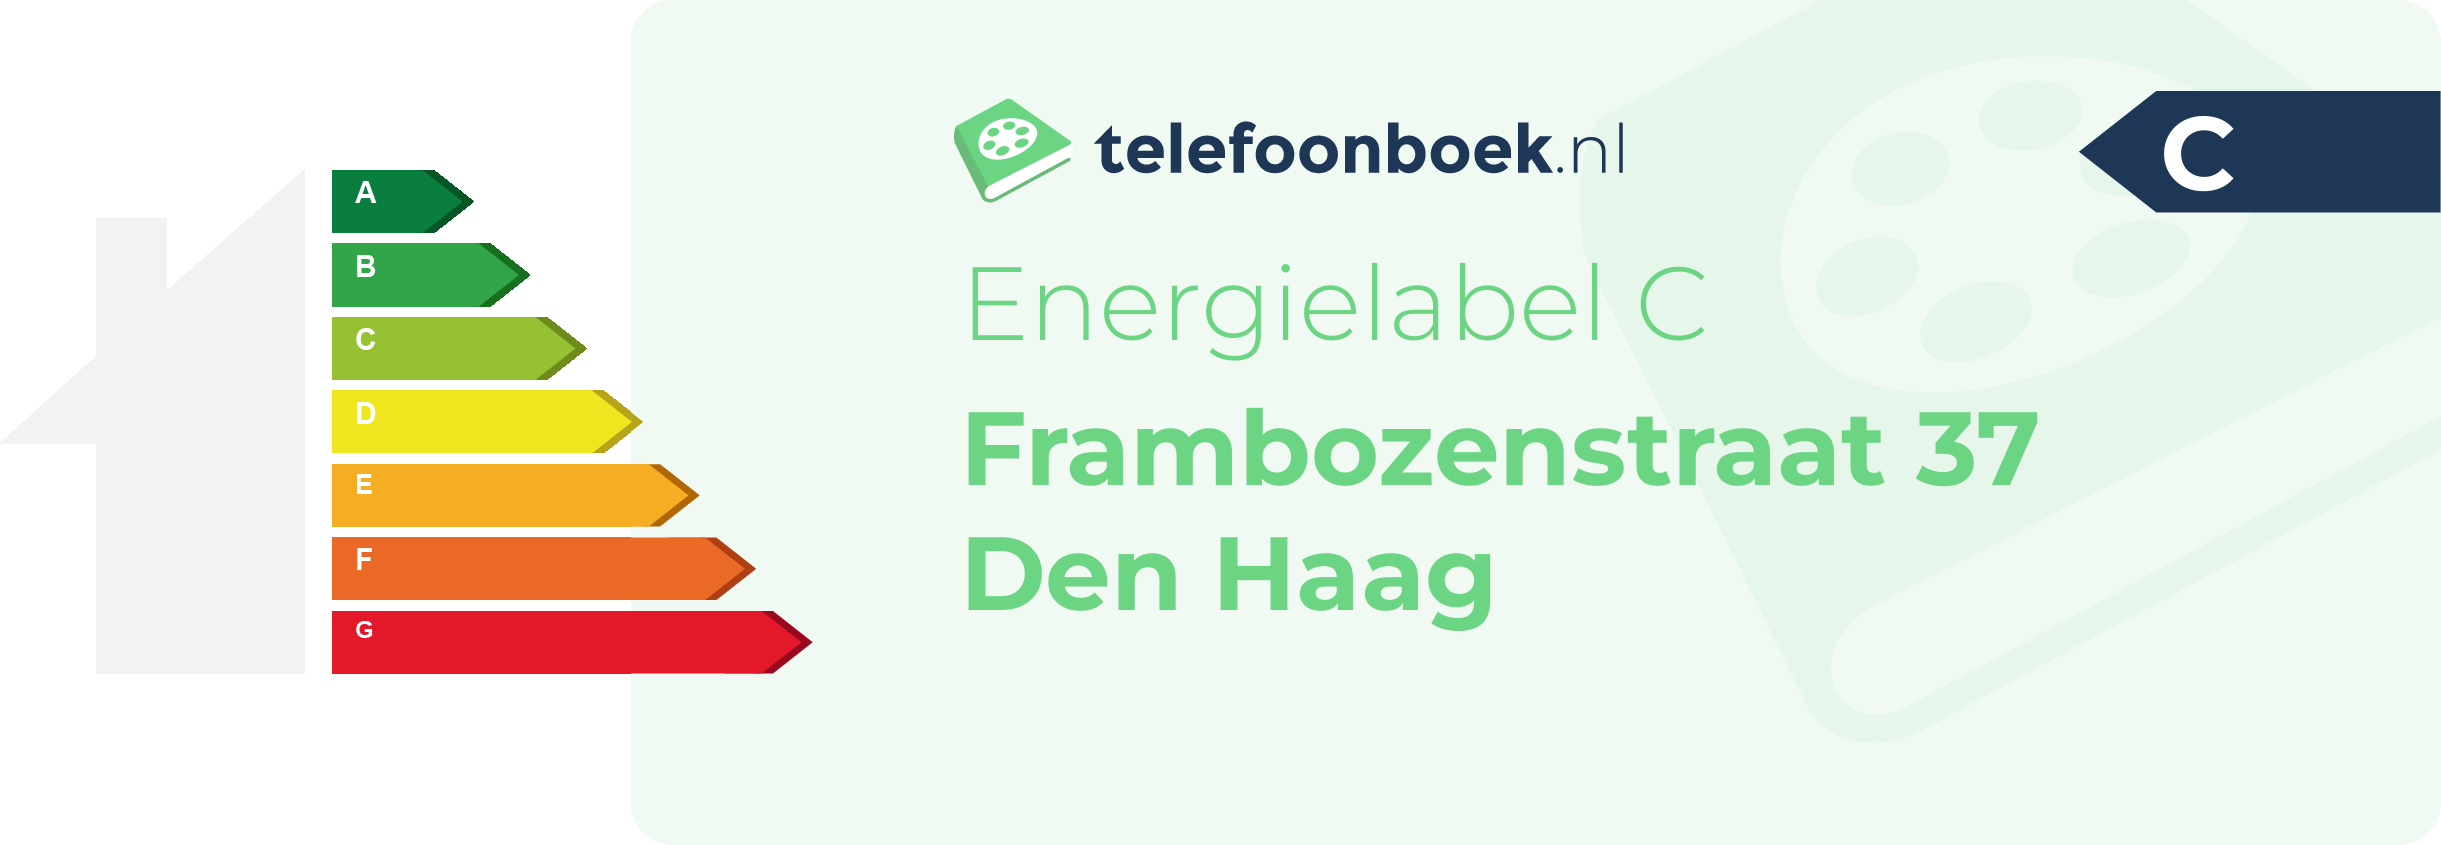 Energielabel Frambozenstraat 37 Den Haag